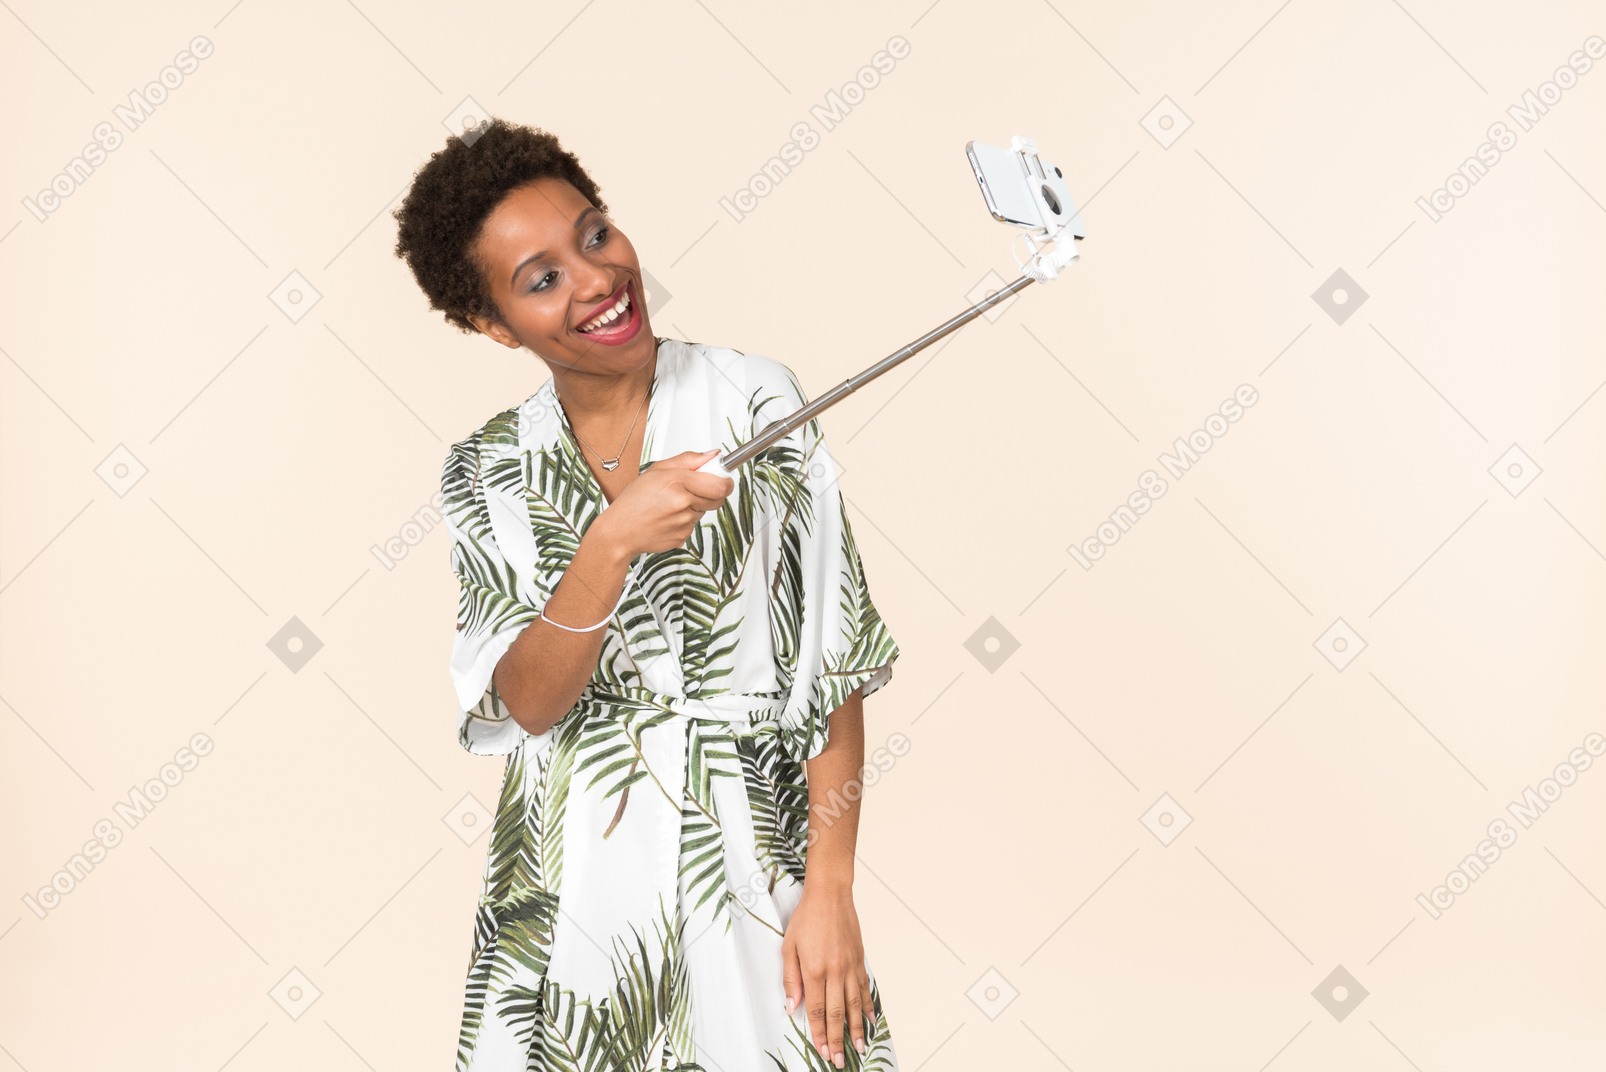 Mujer afro adulta riendo haciendo una selfie con selfie stick